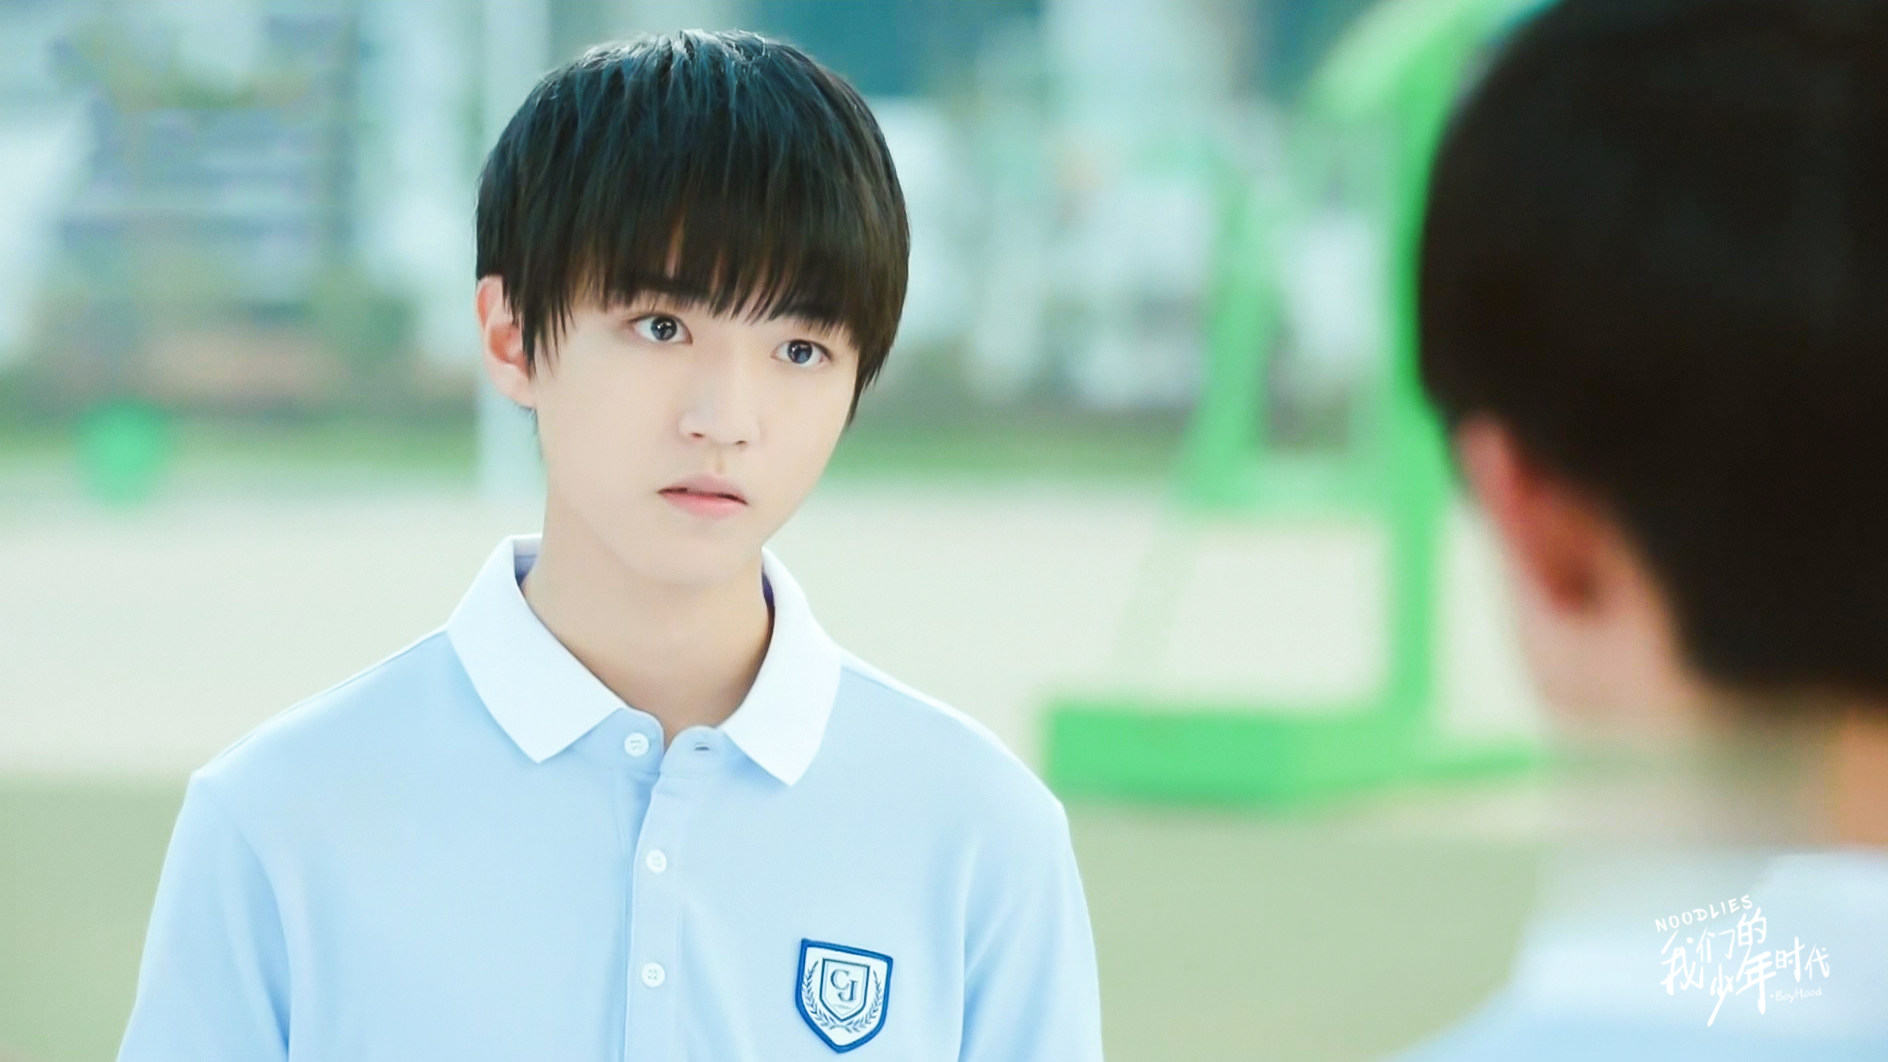 《我们的少年时代》06 王俊凯 饰 棒球少年 邬童